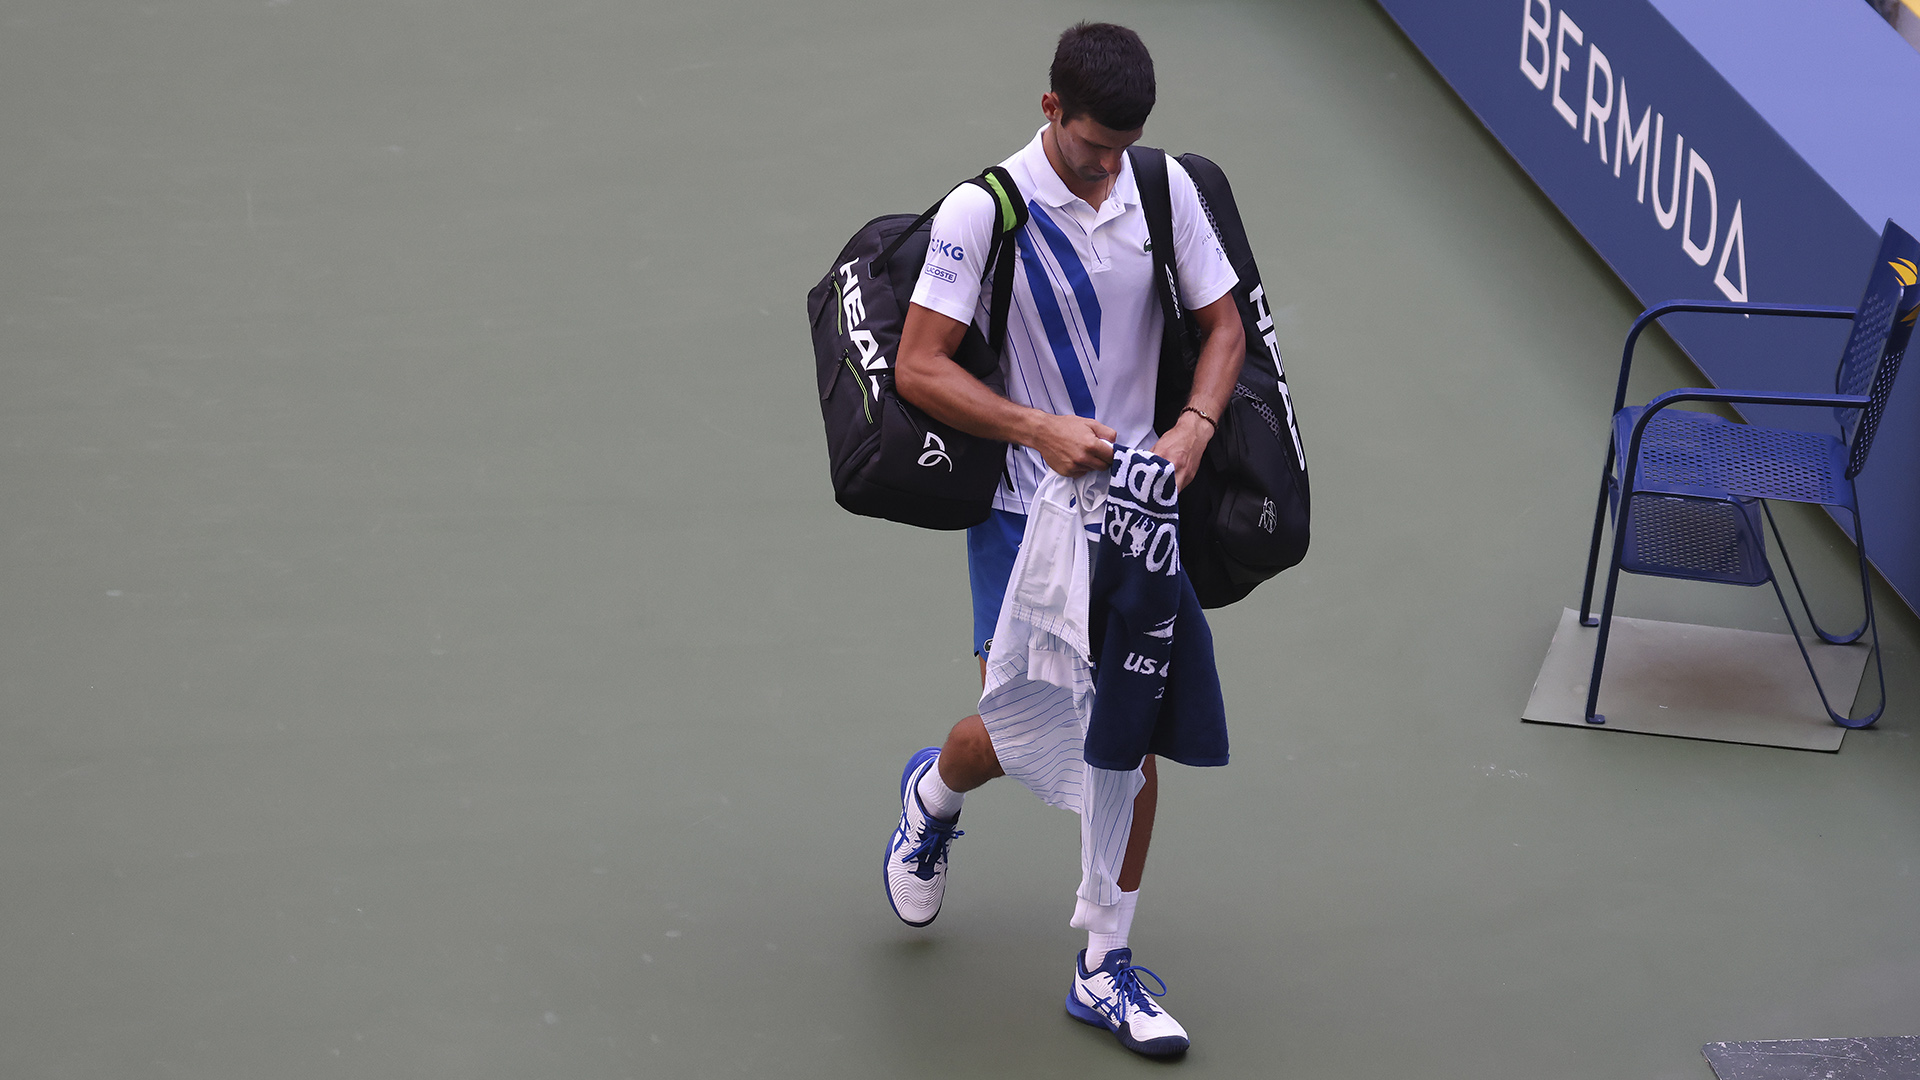 ¿Puede Novak Djokovic apelar de nuevo? ¿Le deportarán a Serbia? Esto es lo que podría ocurrir ahora